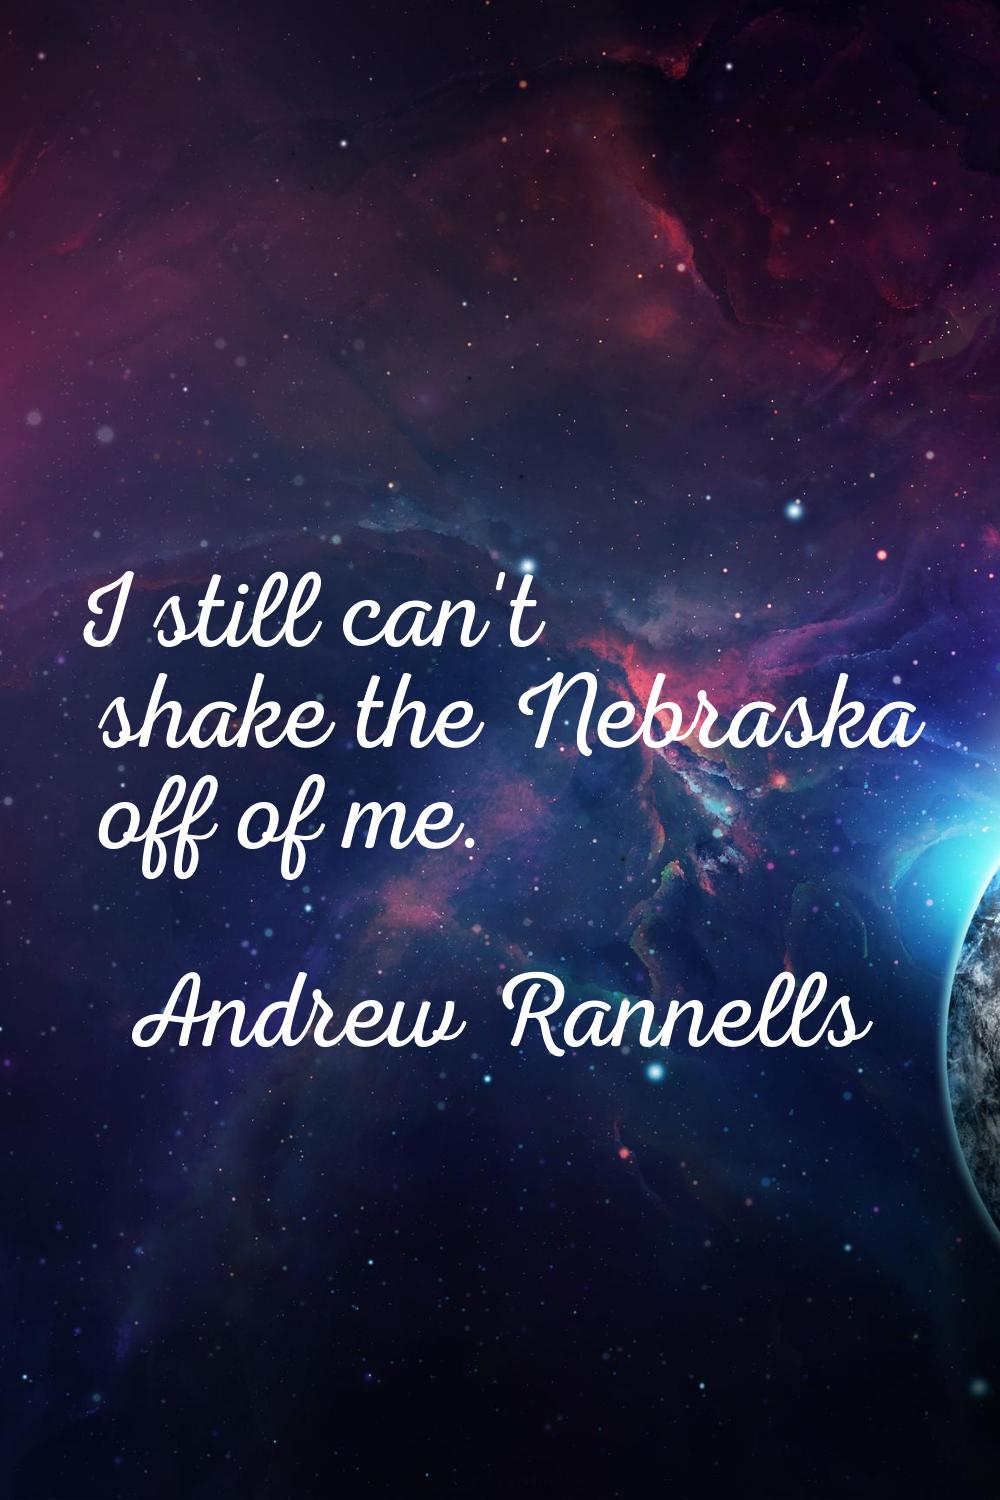 I still can't shake the Nebraska off of me.